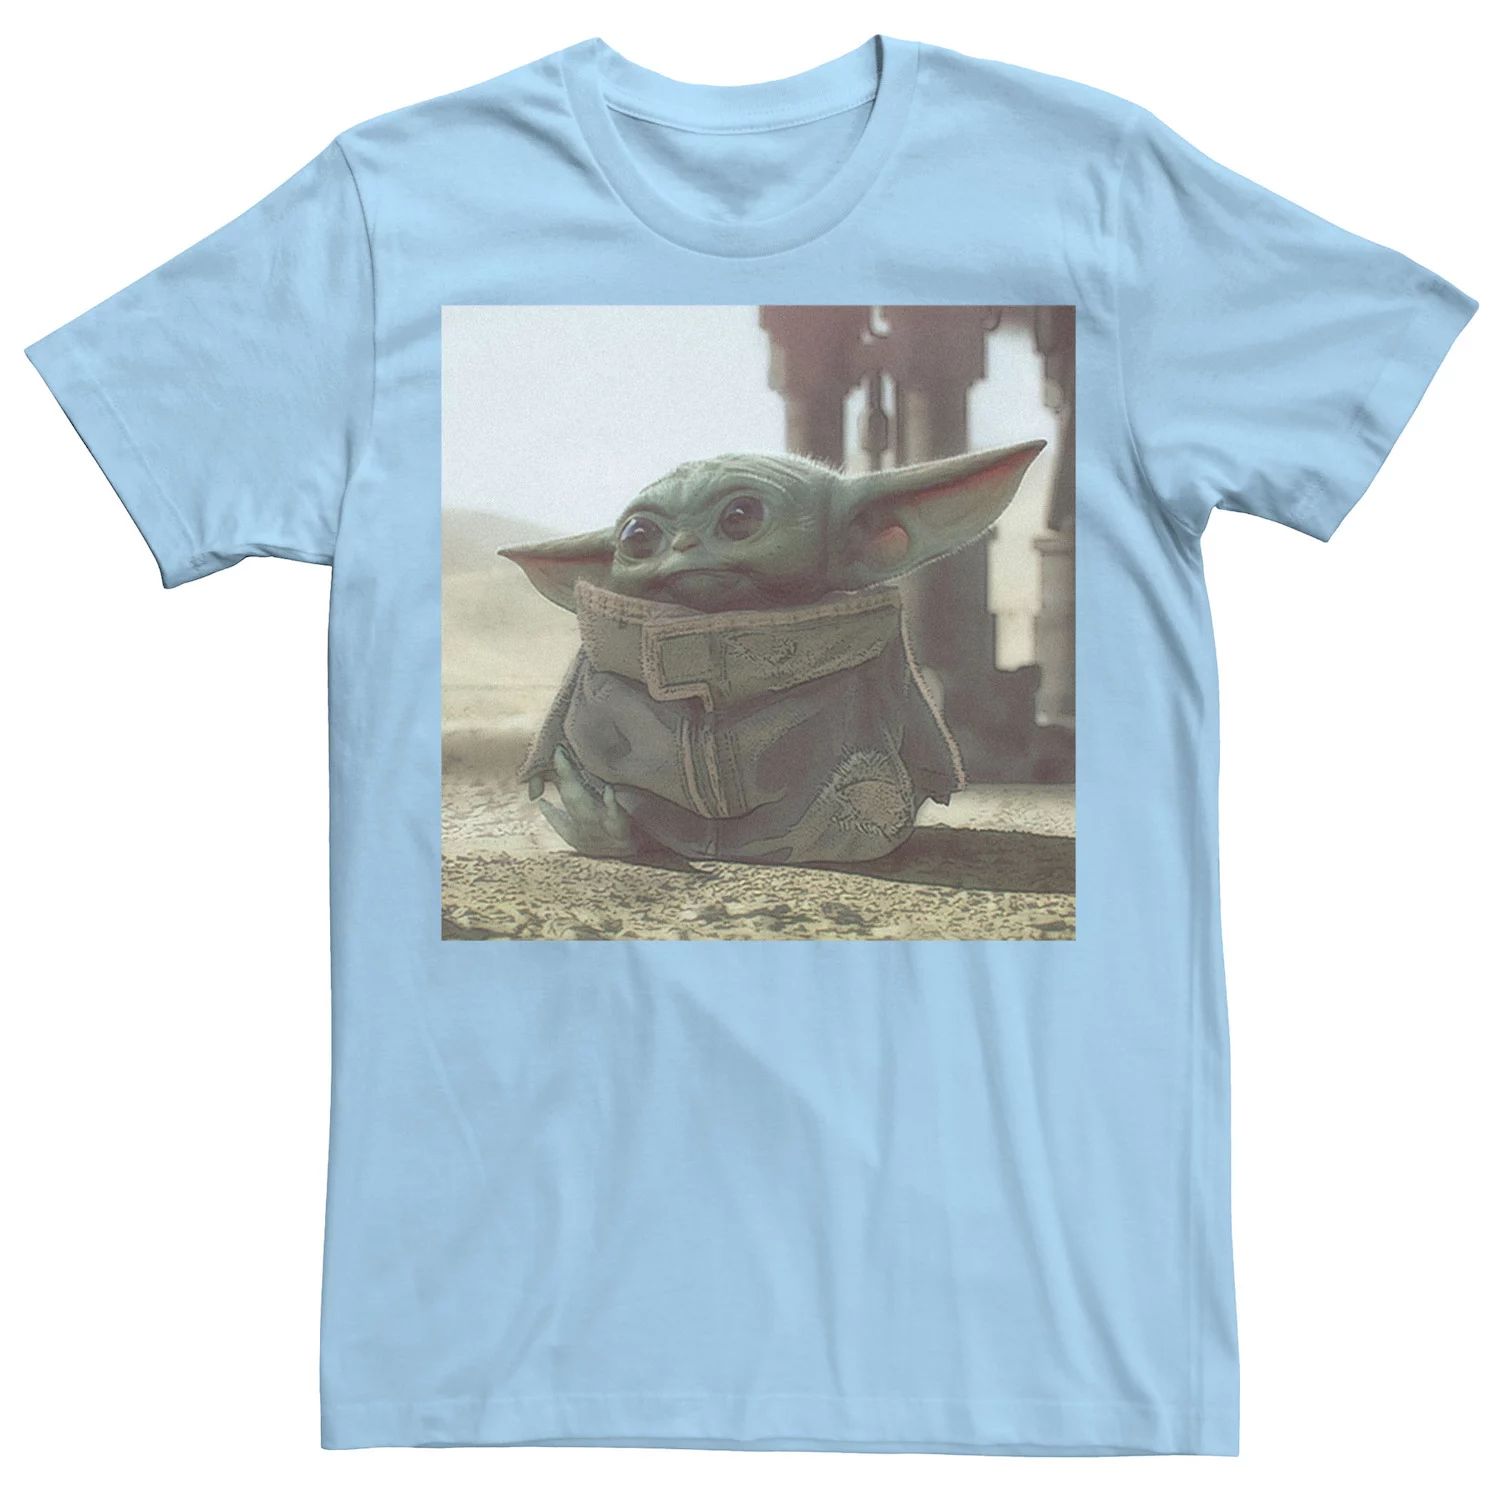 Мужская футболка с плакатом «Звездные войны, мандалорец, ребенок, известный как Малыш Йода» Star Wars, светло-синий